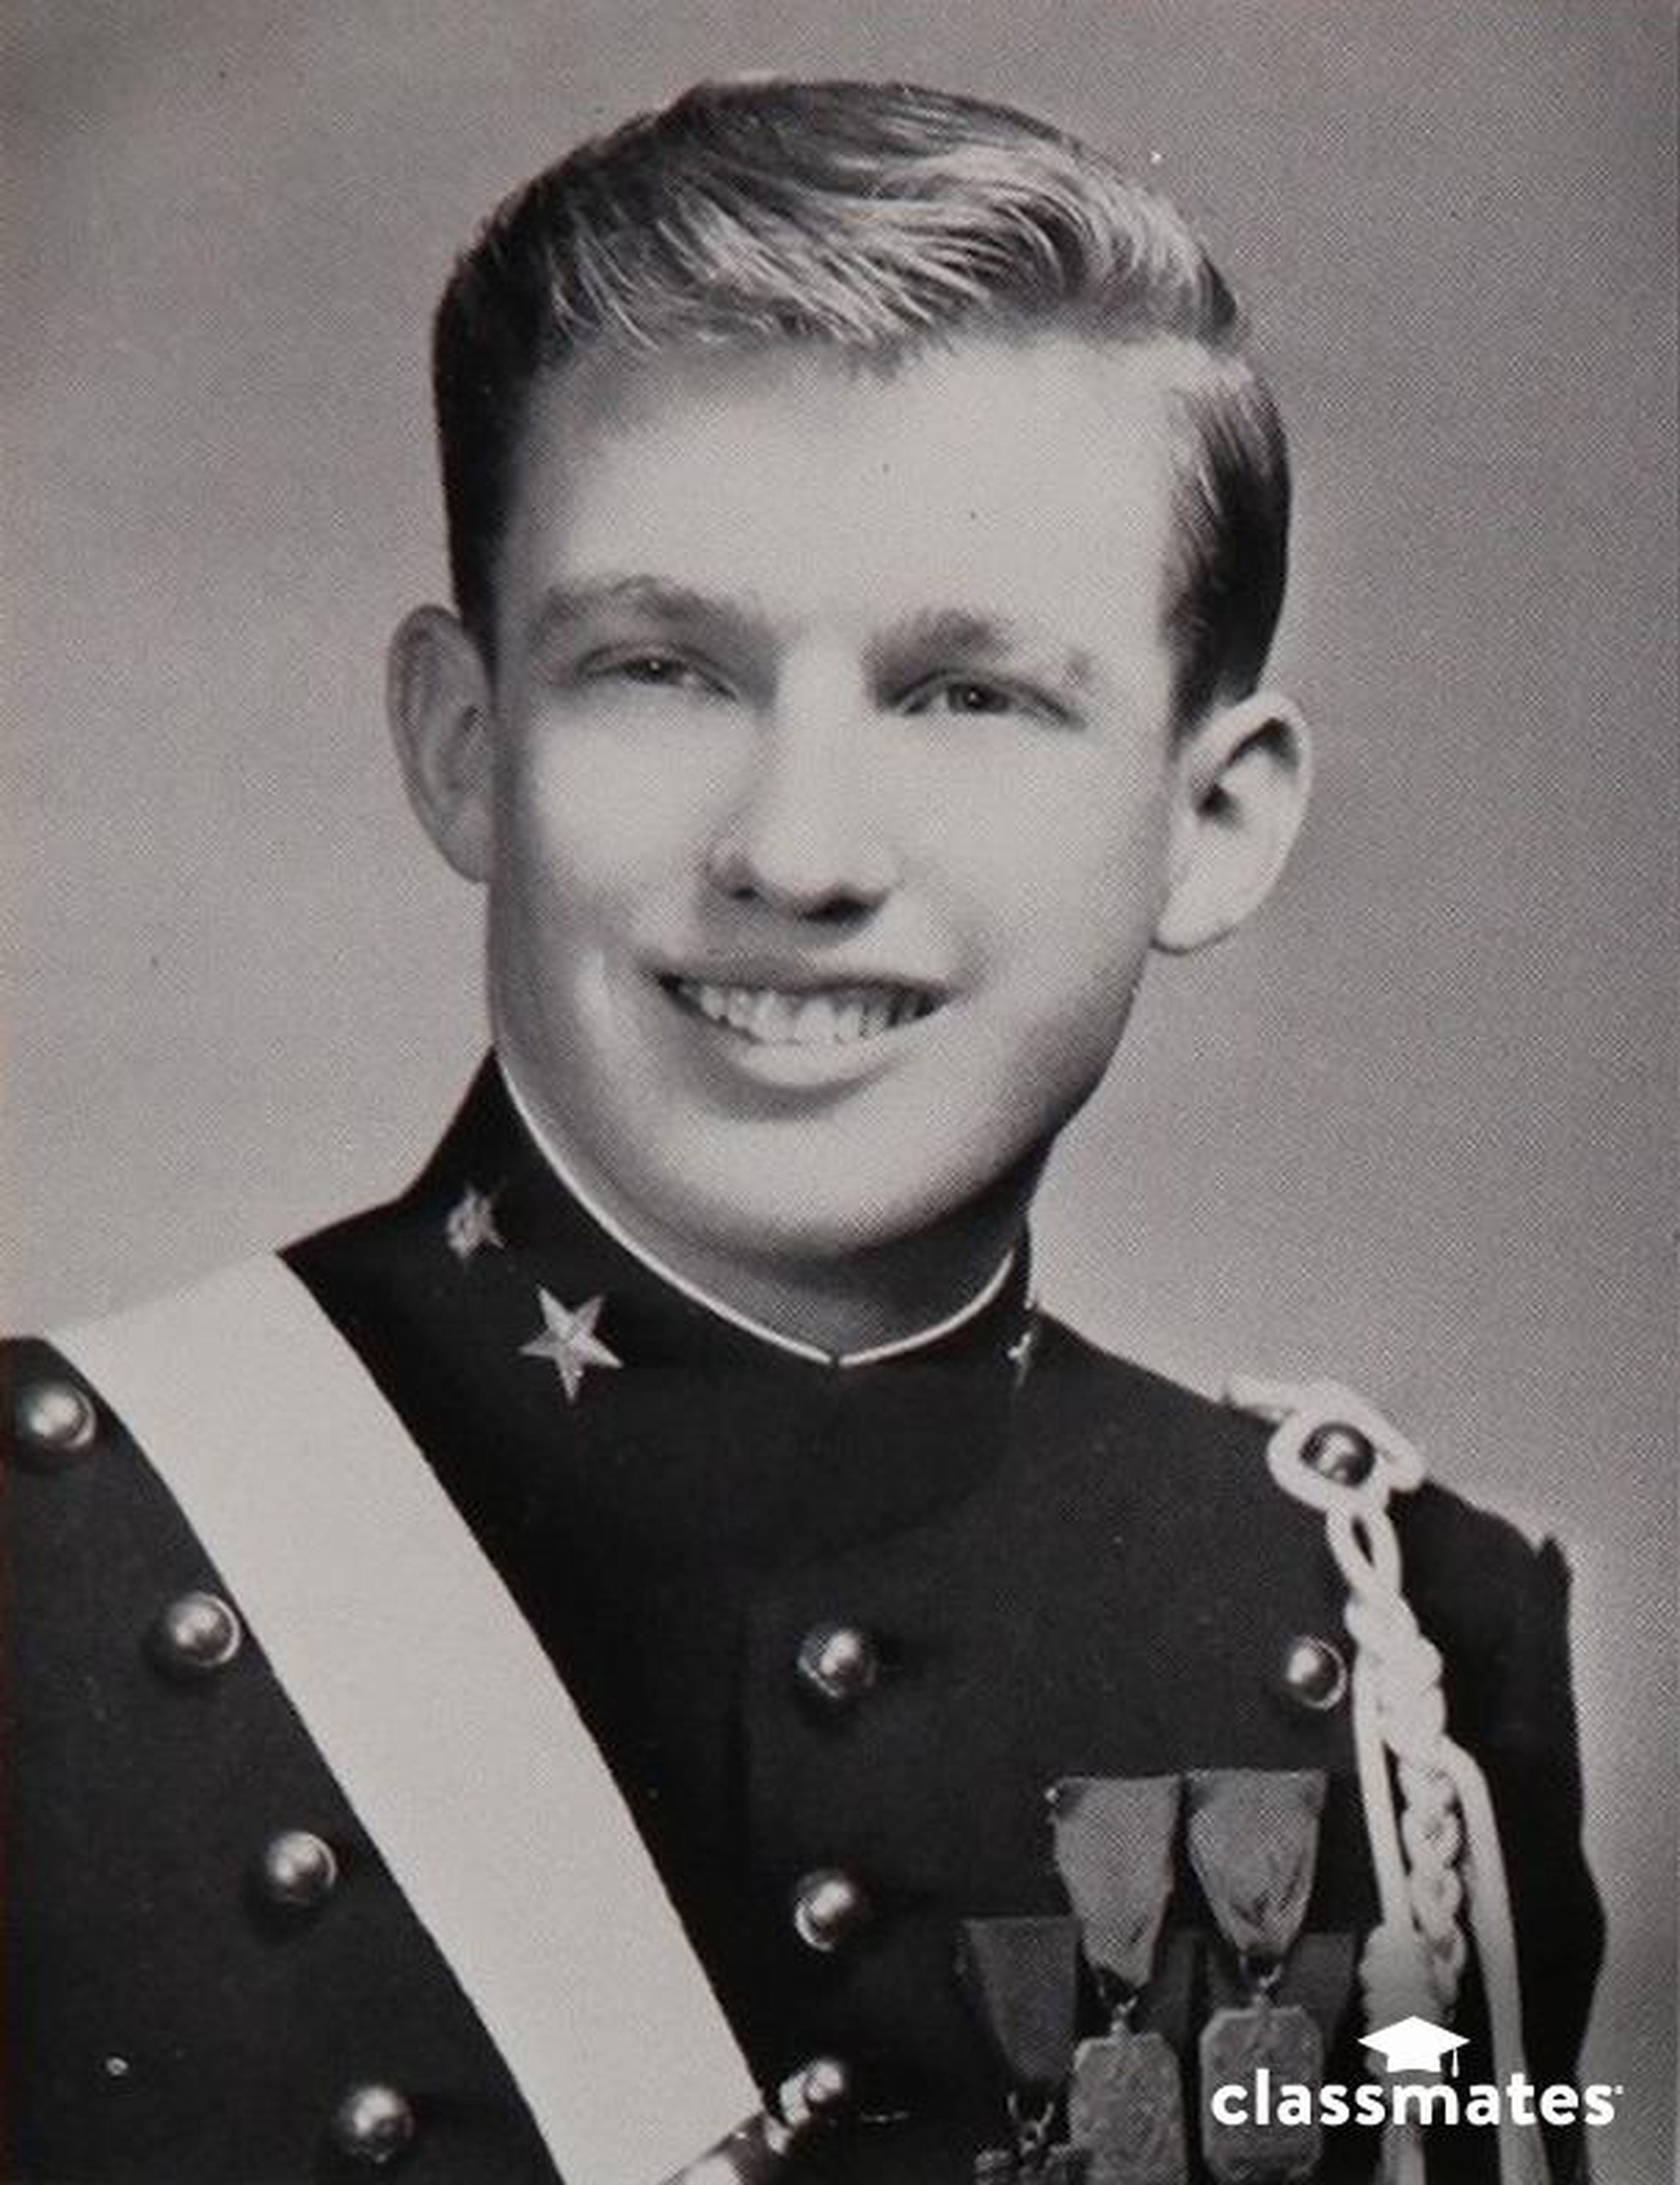 Esta es la foto principal de Trump, del anuario 1964 de la Academia Militar de Nueva York.